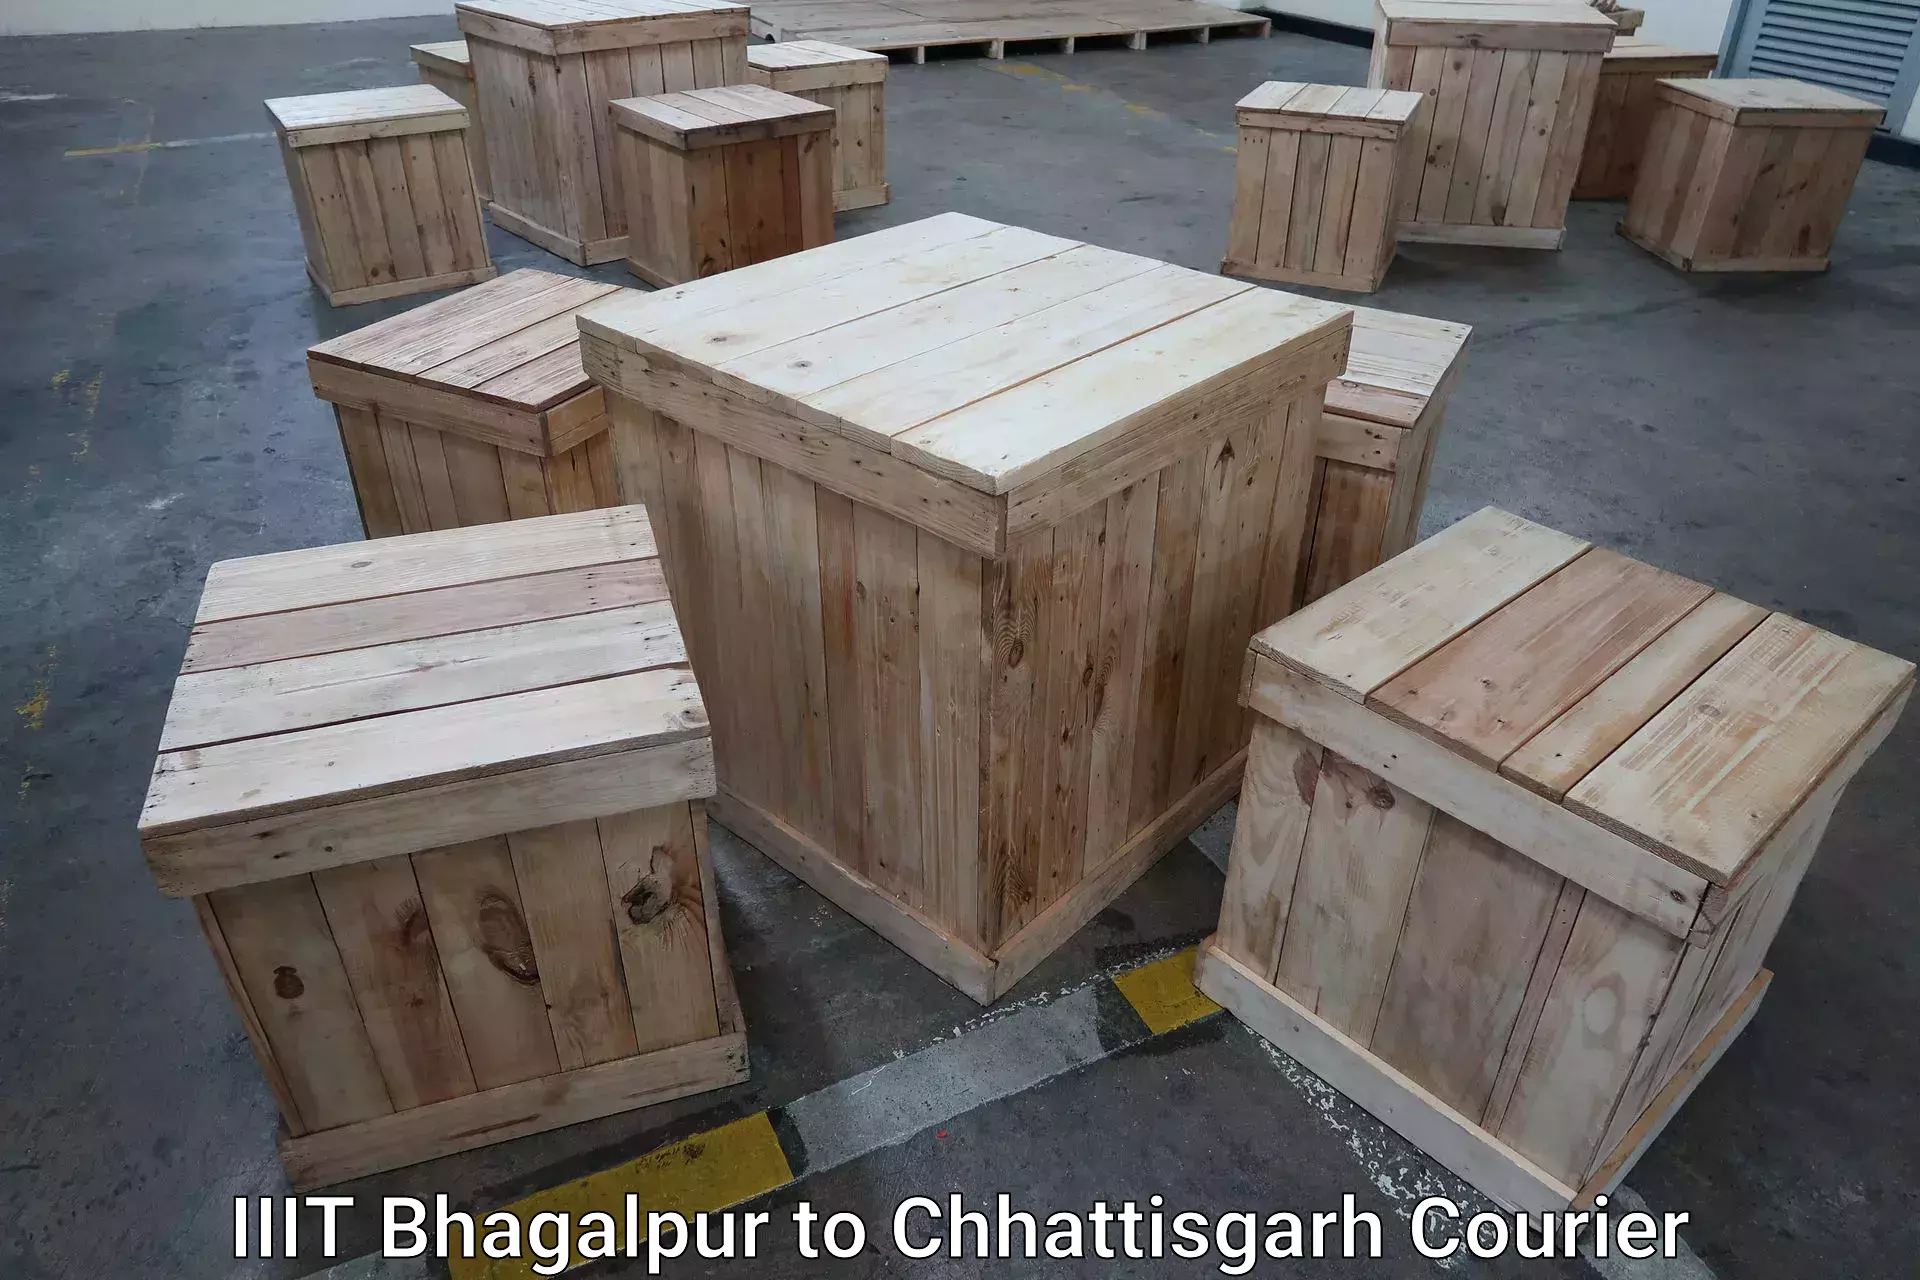 Scheduled baggage courier IIIT Bhagalpur to Chhattisgarh